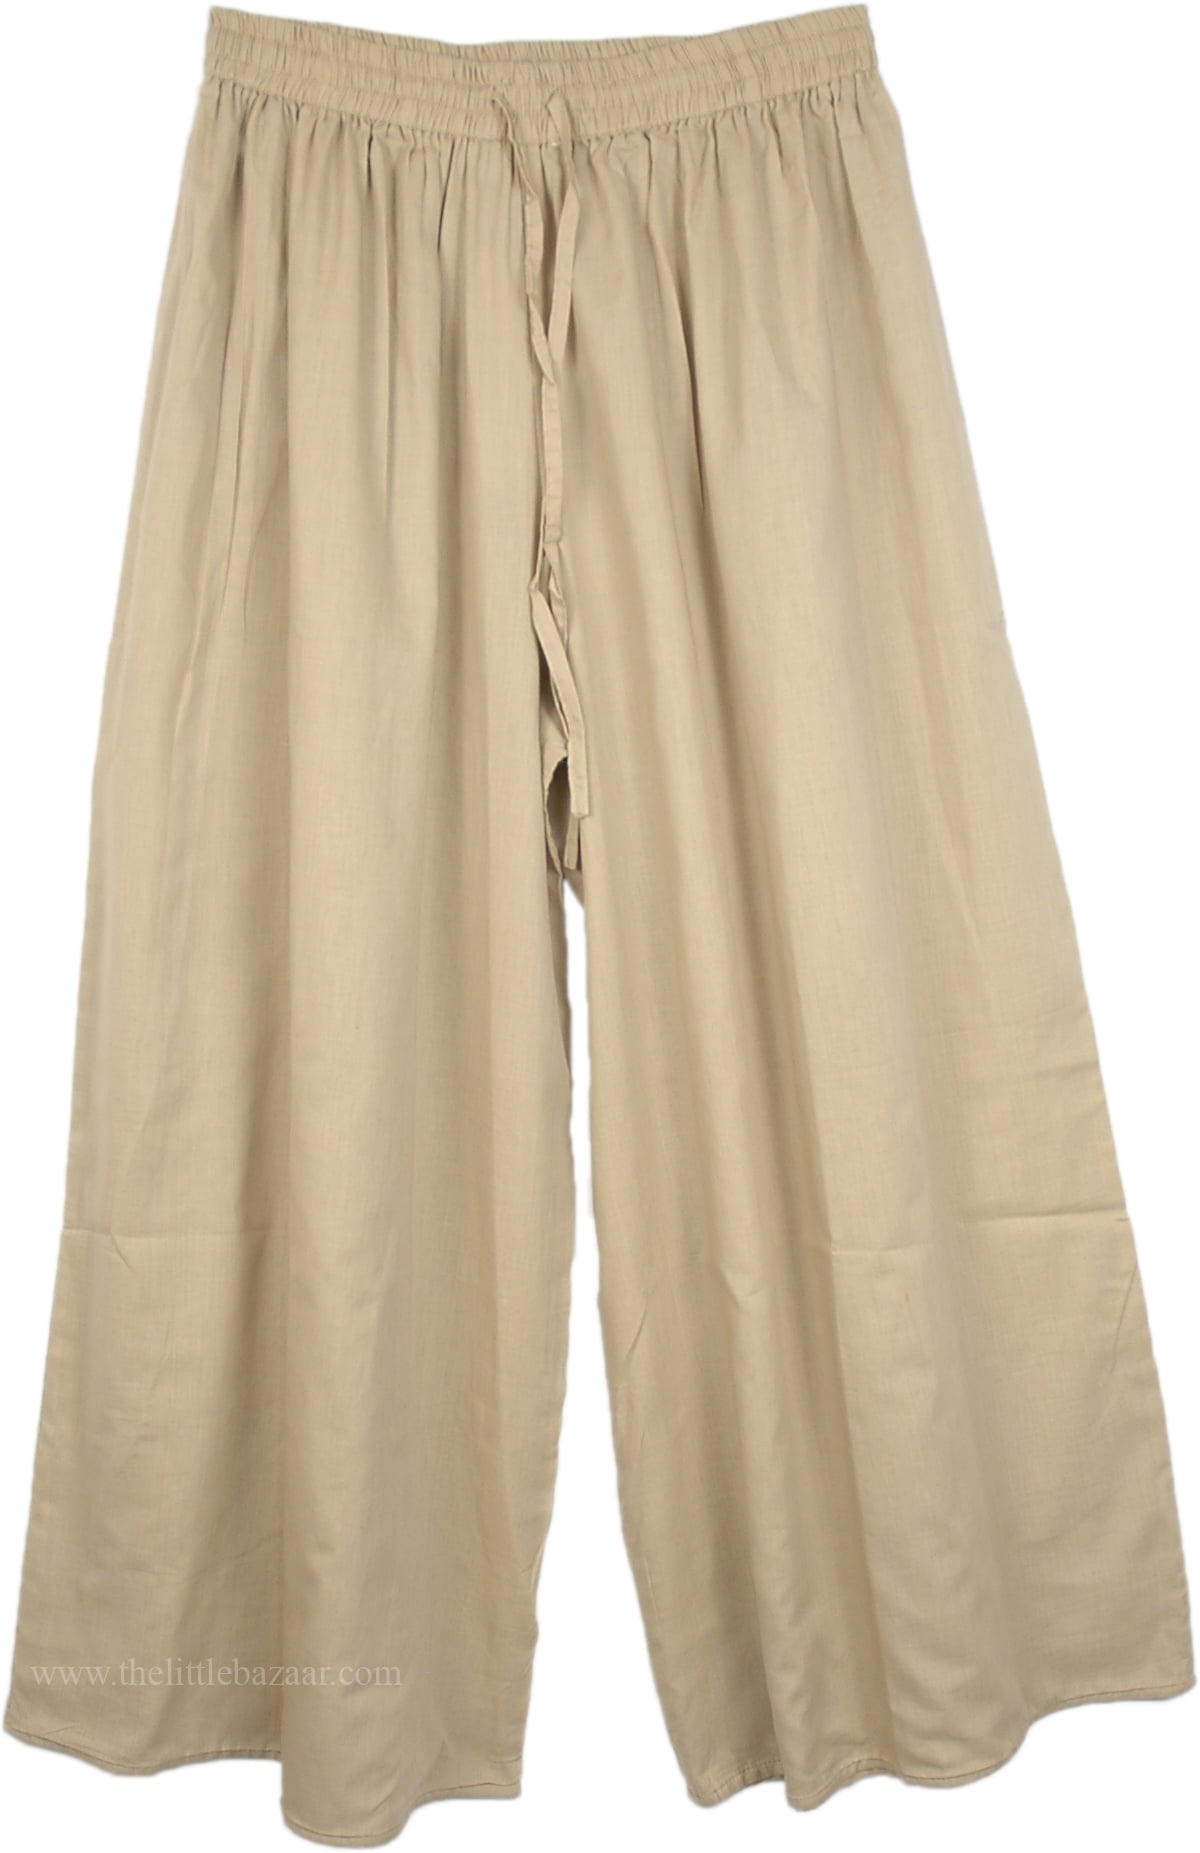 Light Brown Wide Leg Summer Cotton Pants - Walmart.com